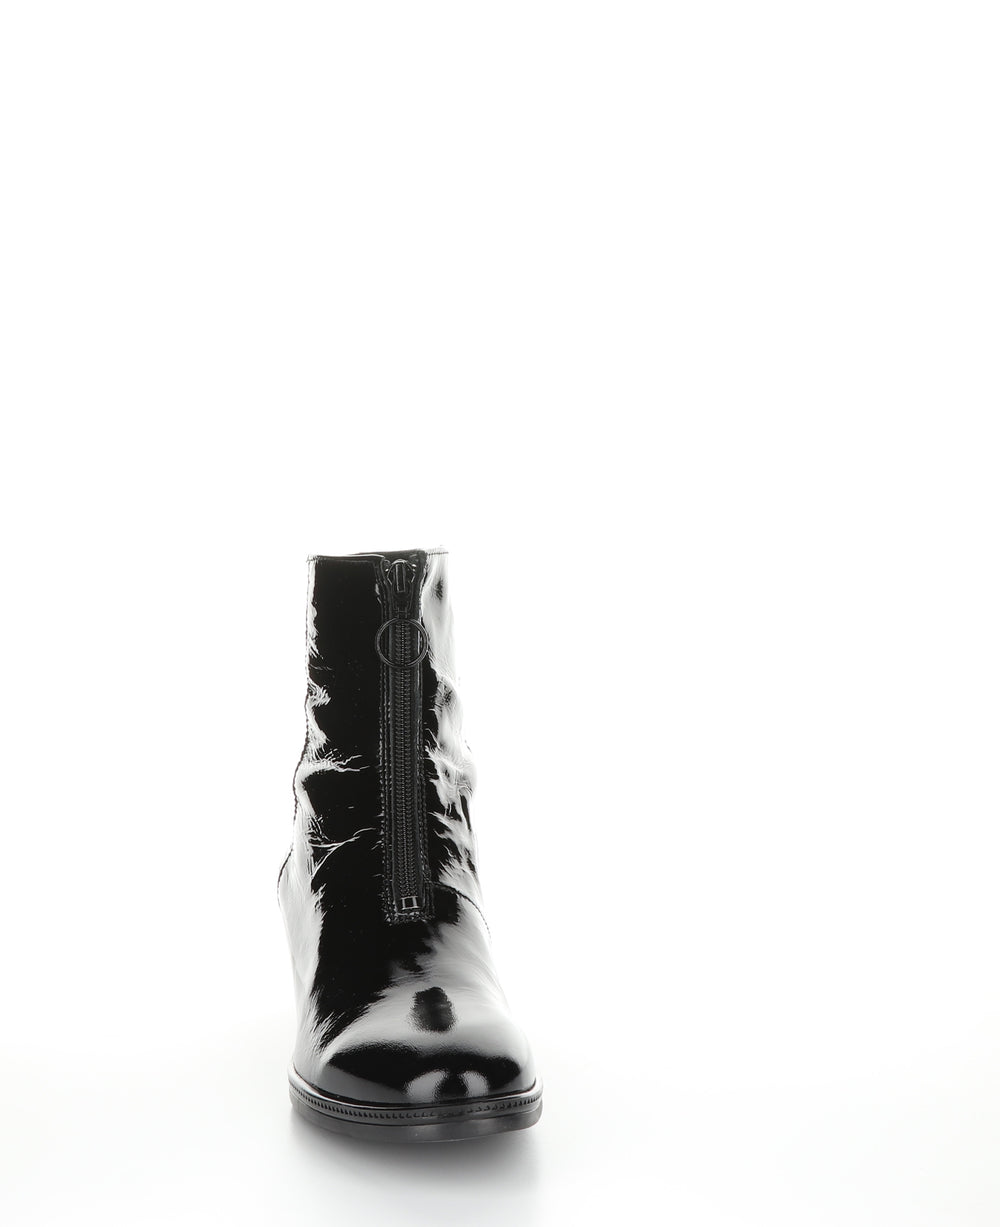 JORDON Black Zip Up Ankle Boots|JORDON Bottines avec Fermeture Zippée in Noir